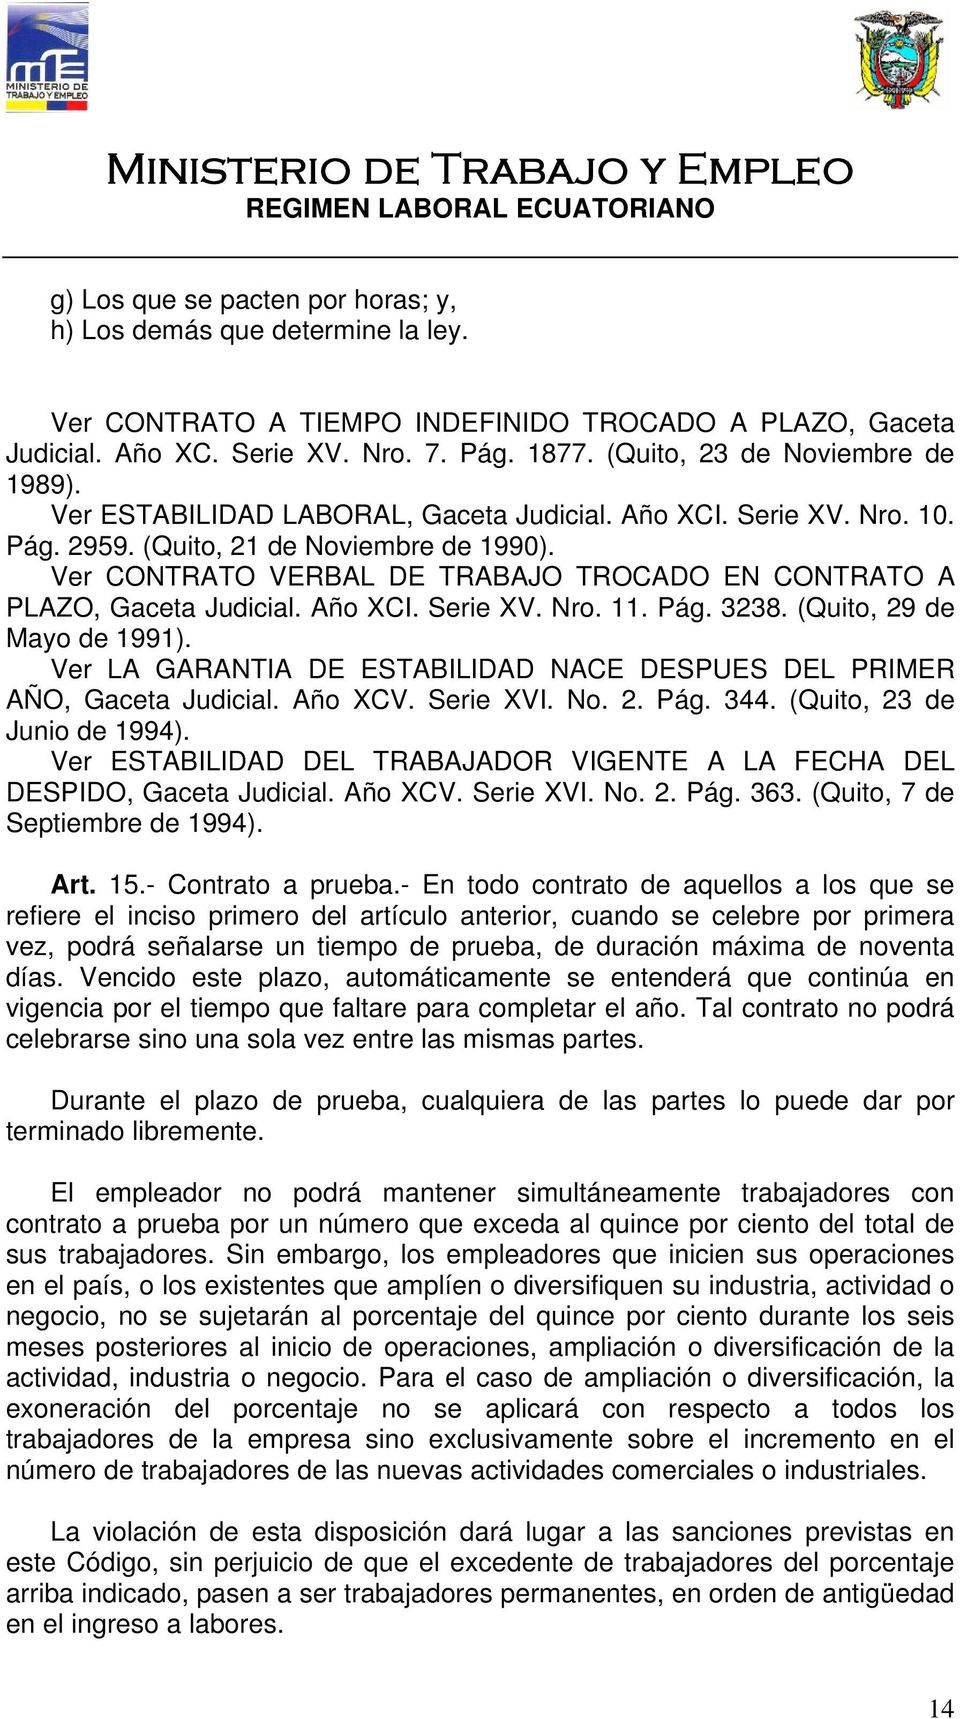 Ver CONTRATO VERBAL DE TRABAJO TROCADO EN CONTRATO A PLAZO, Gaceta Judicial. Año XCI. Serie XV. Nro. 11. Pág. 3238. (Quito, 29 de Mayo de 1991).